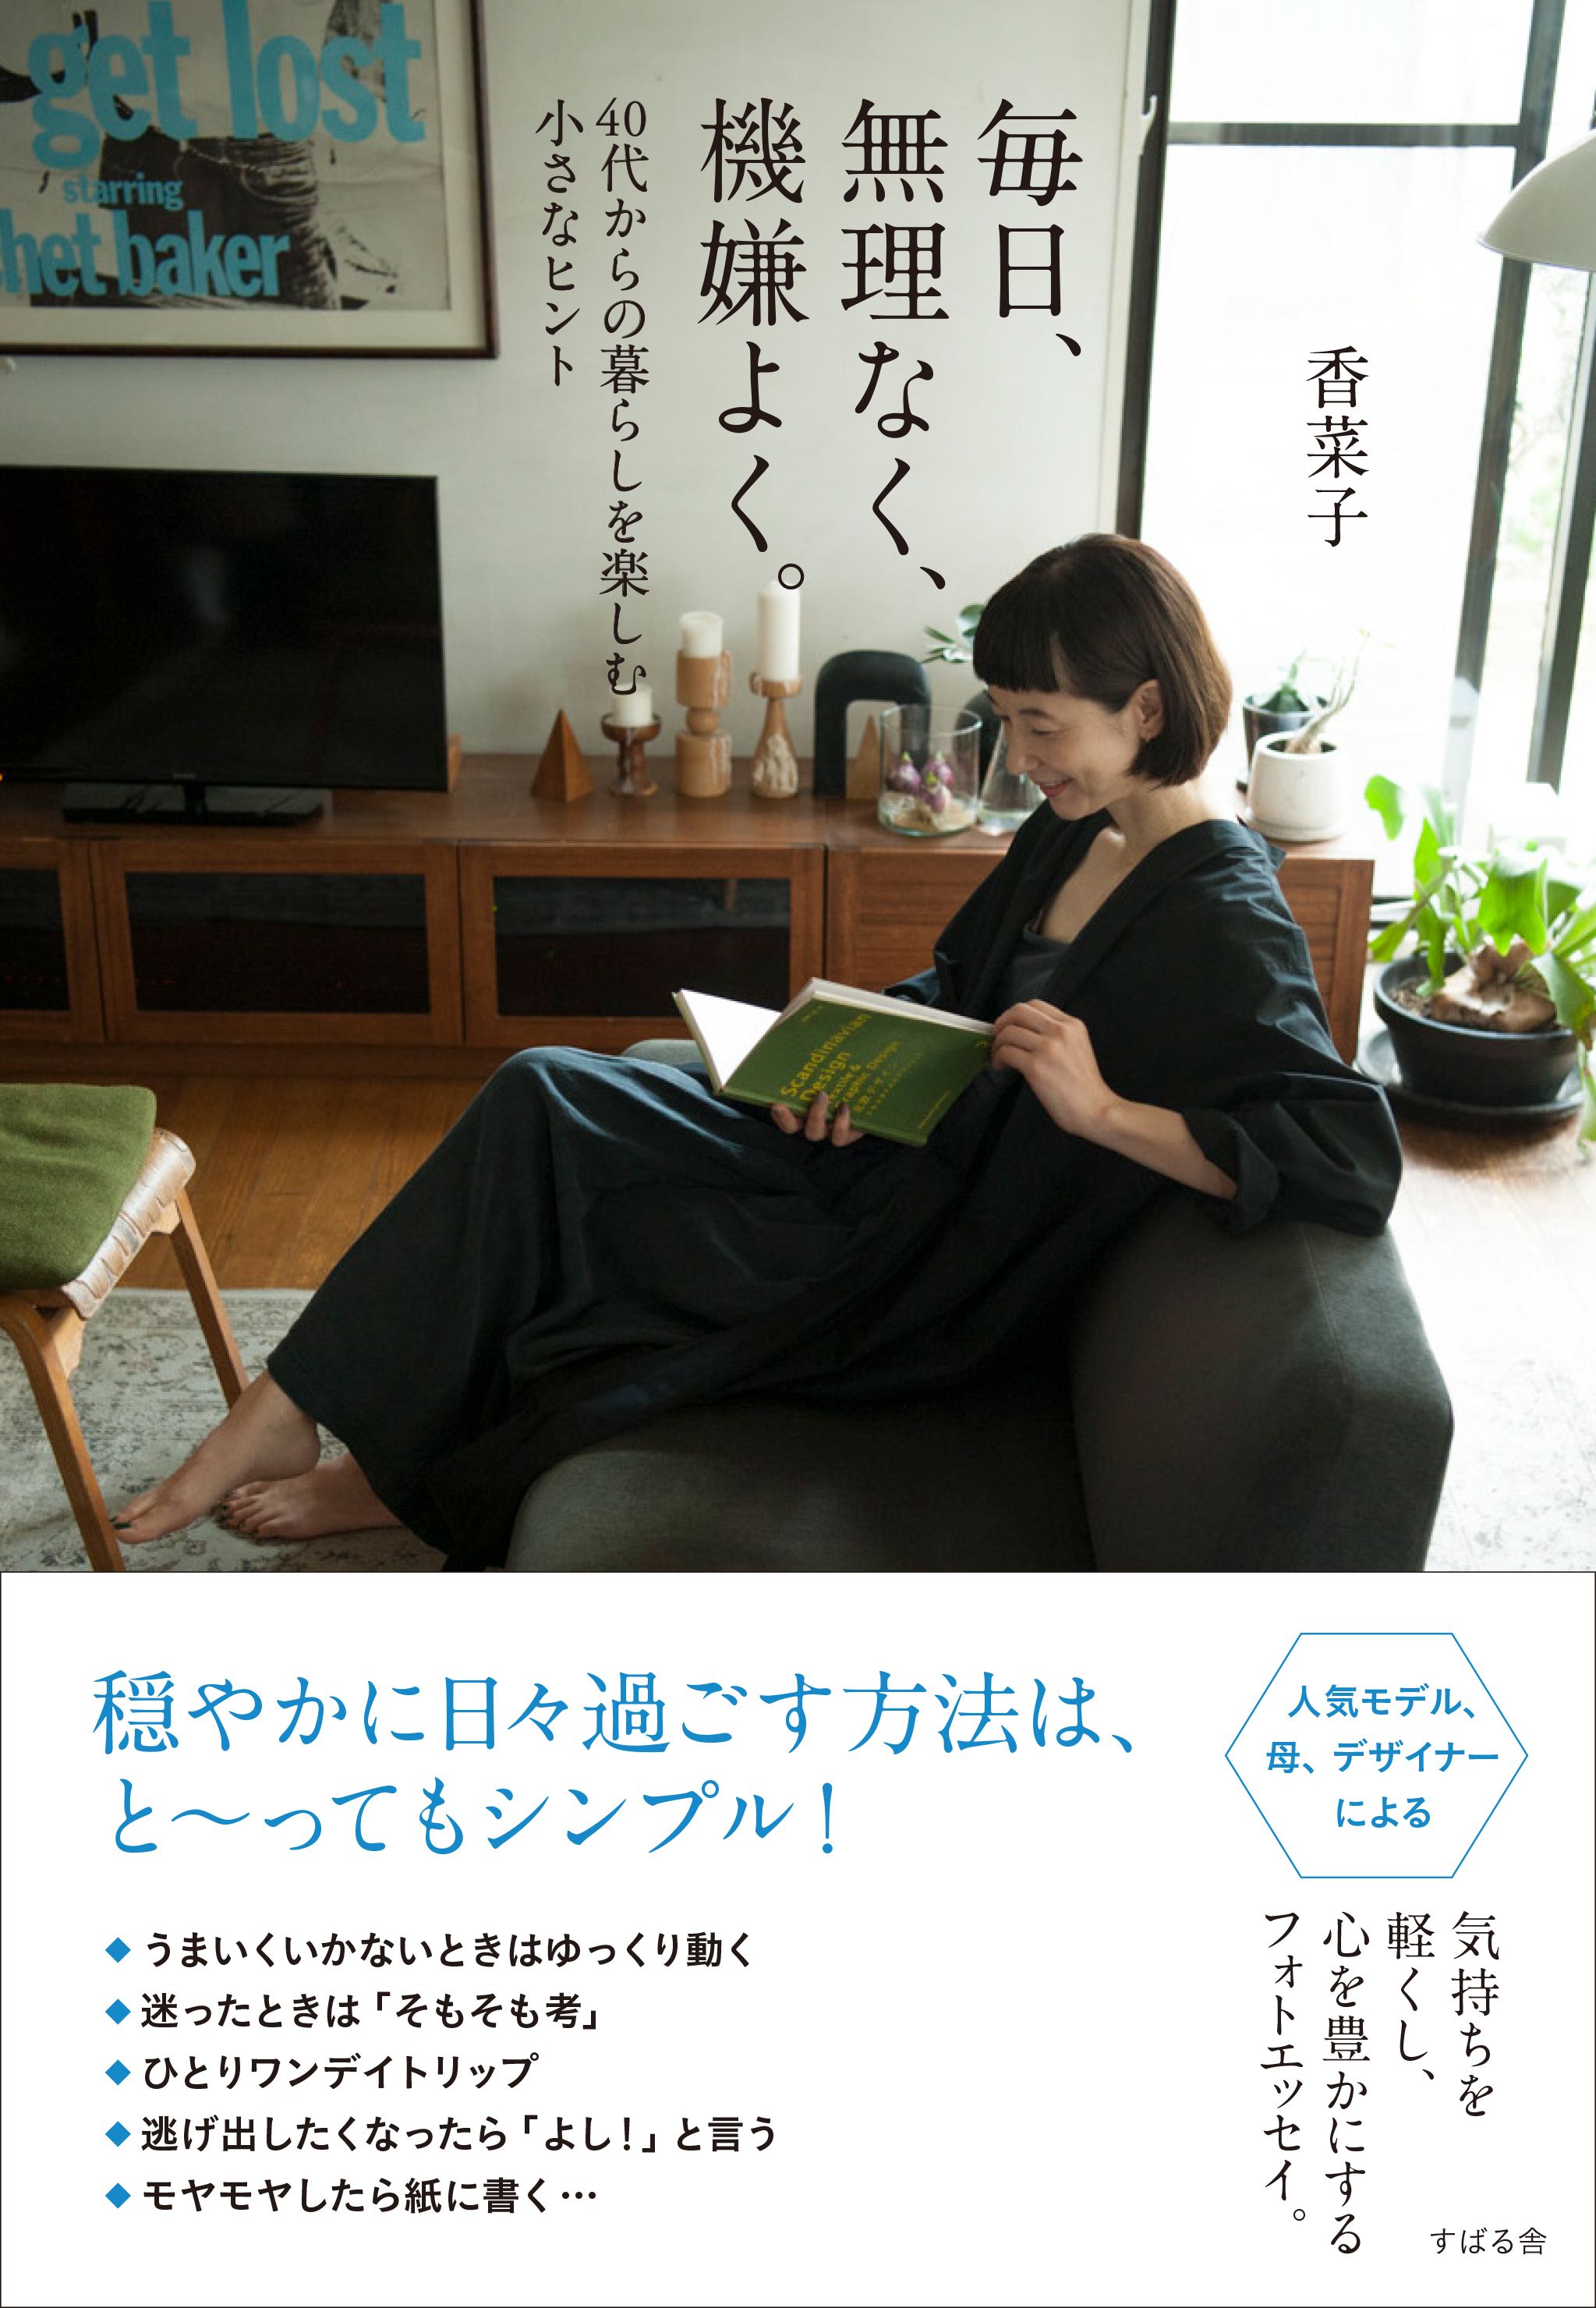 朝は洗顔しないんです。モデルの香菜子さんの「40代からのお肌ケア」 106-H1-murinaku.jpg